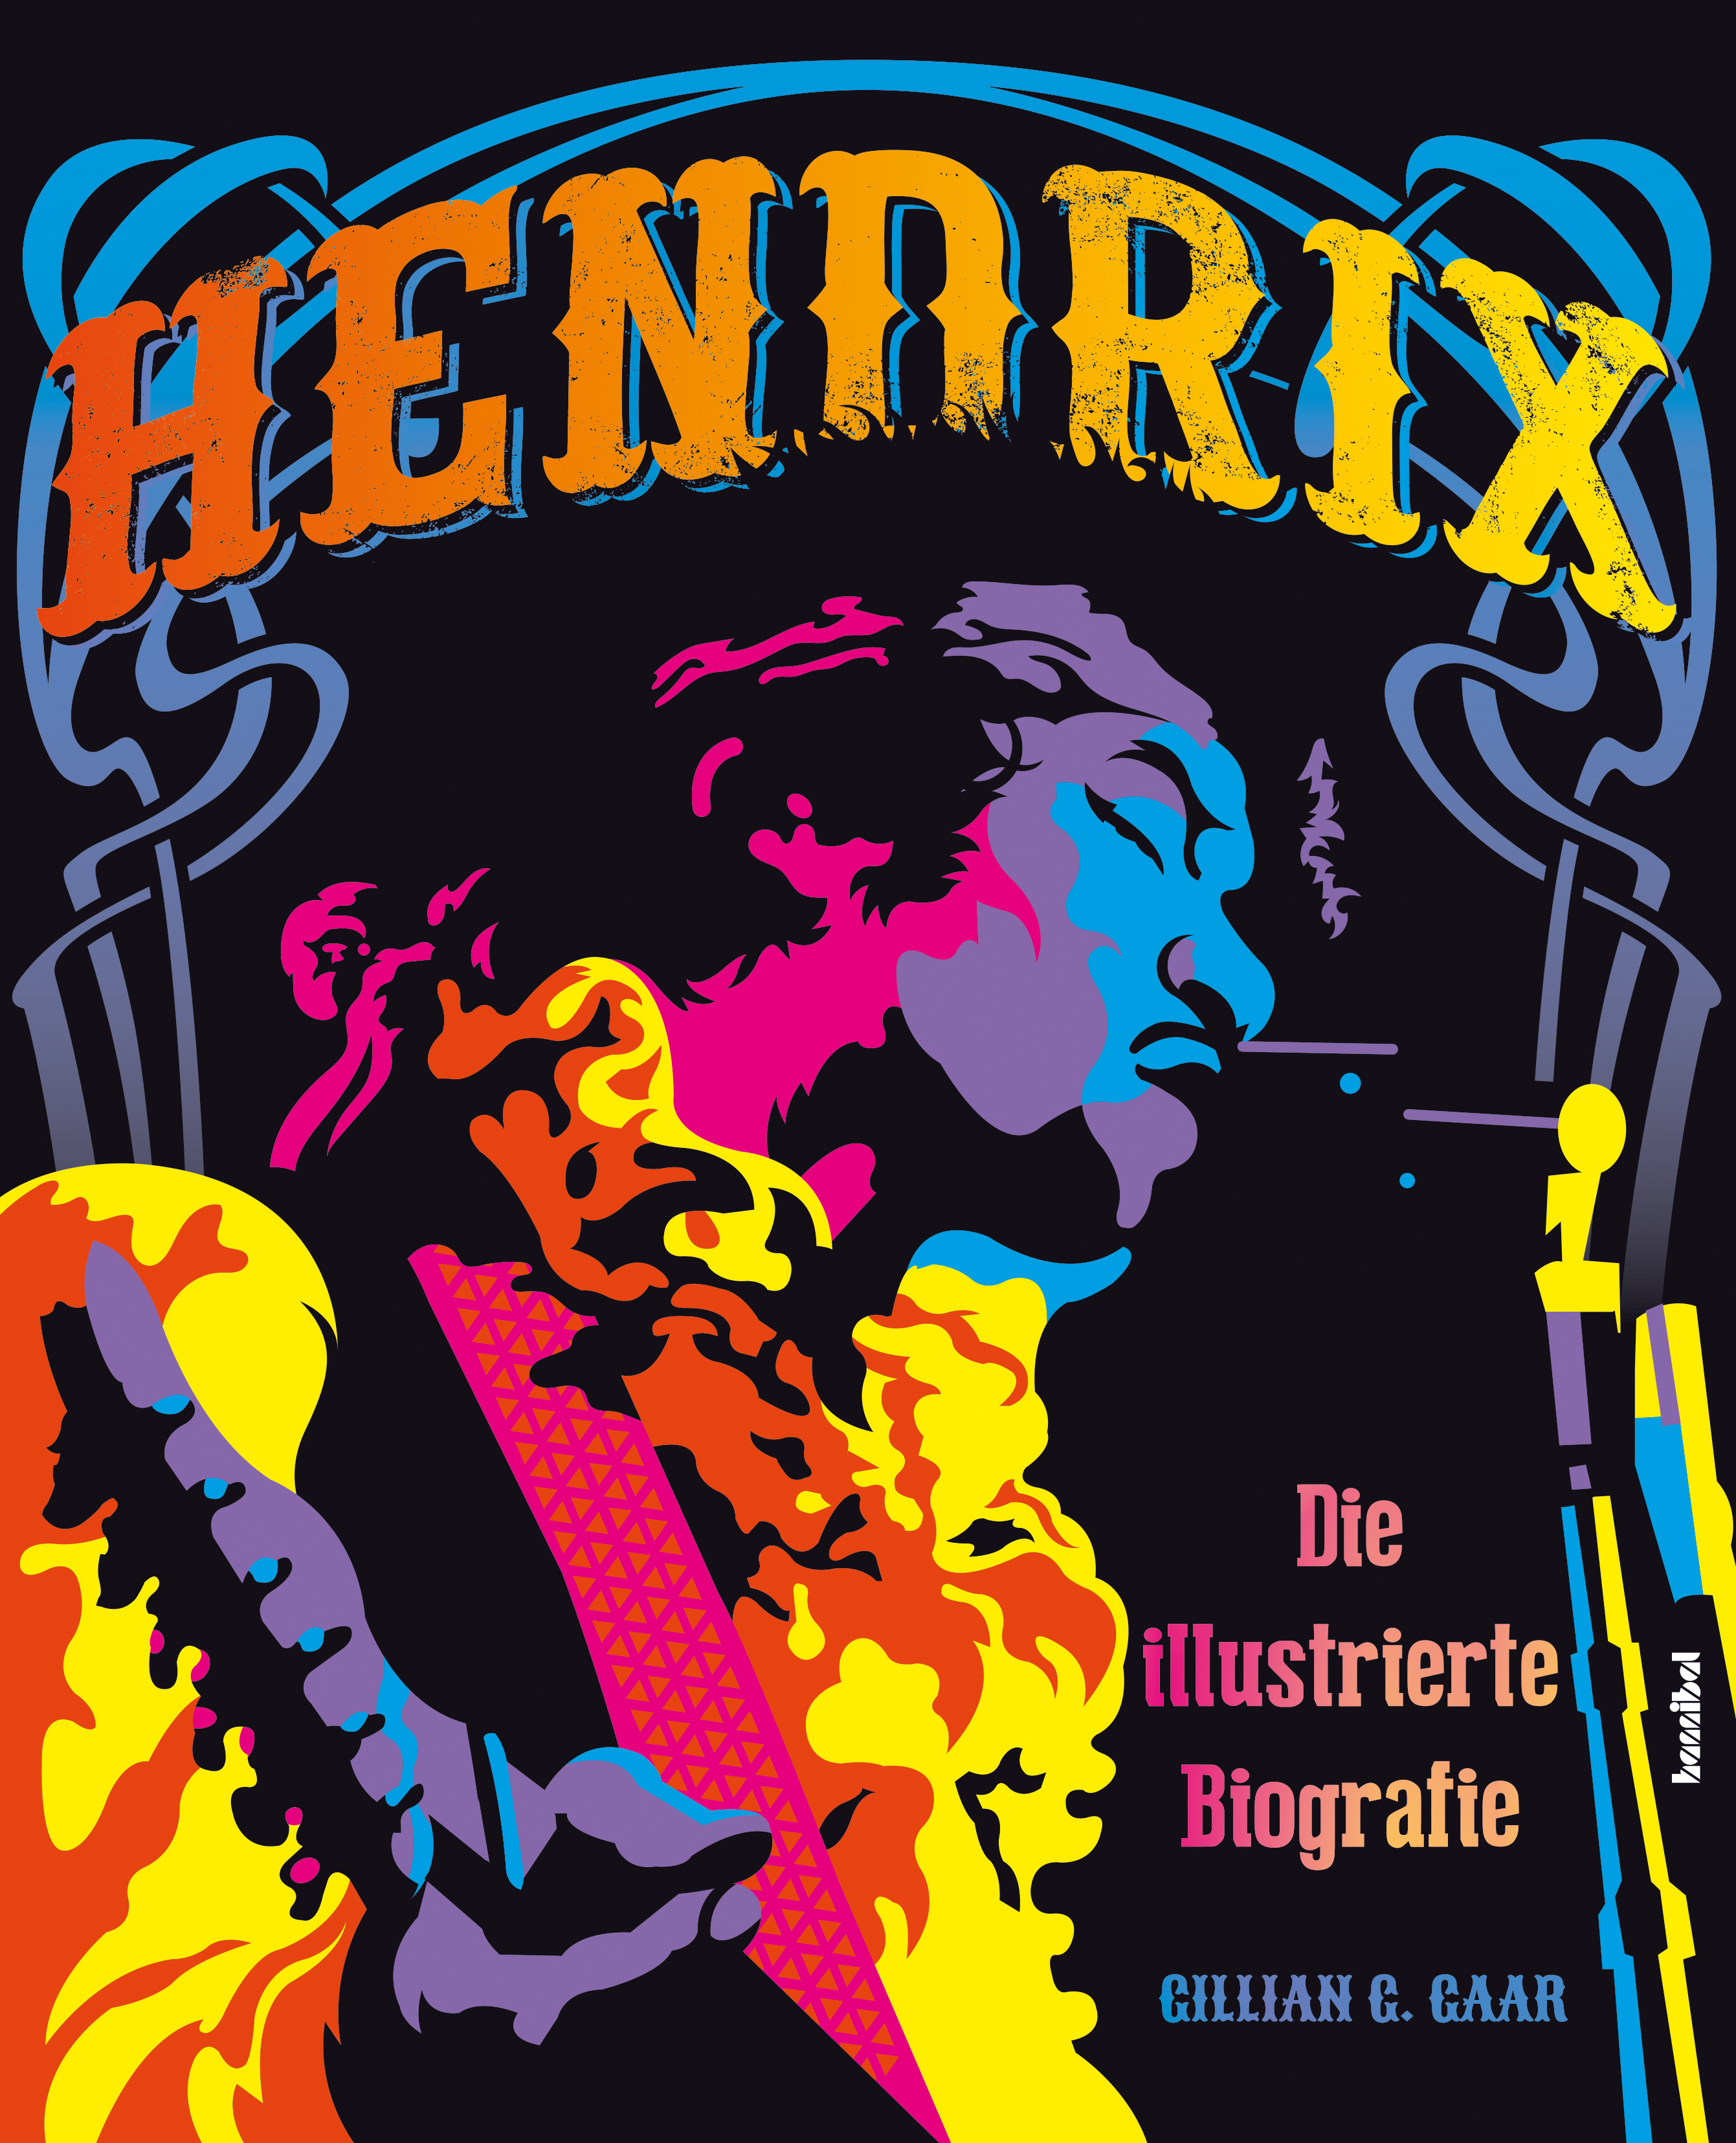 Gillian G. Gaar: Hendrix – Die illustrierte Biografie